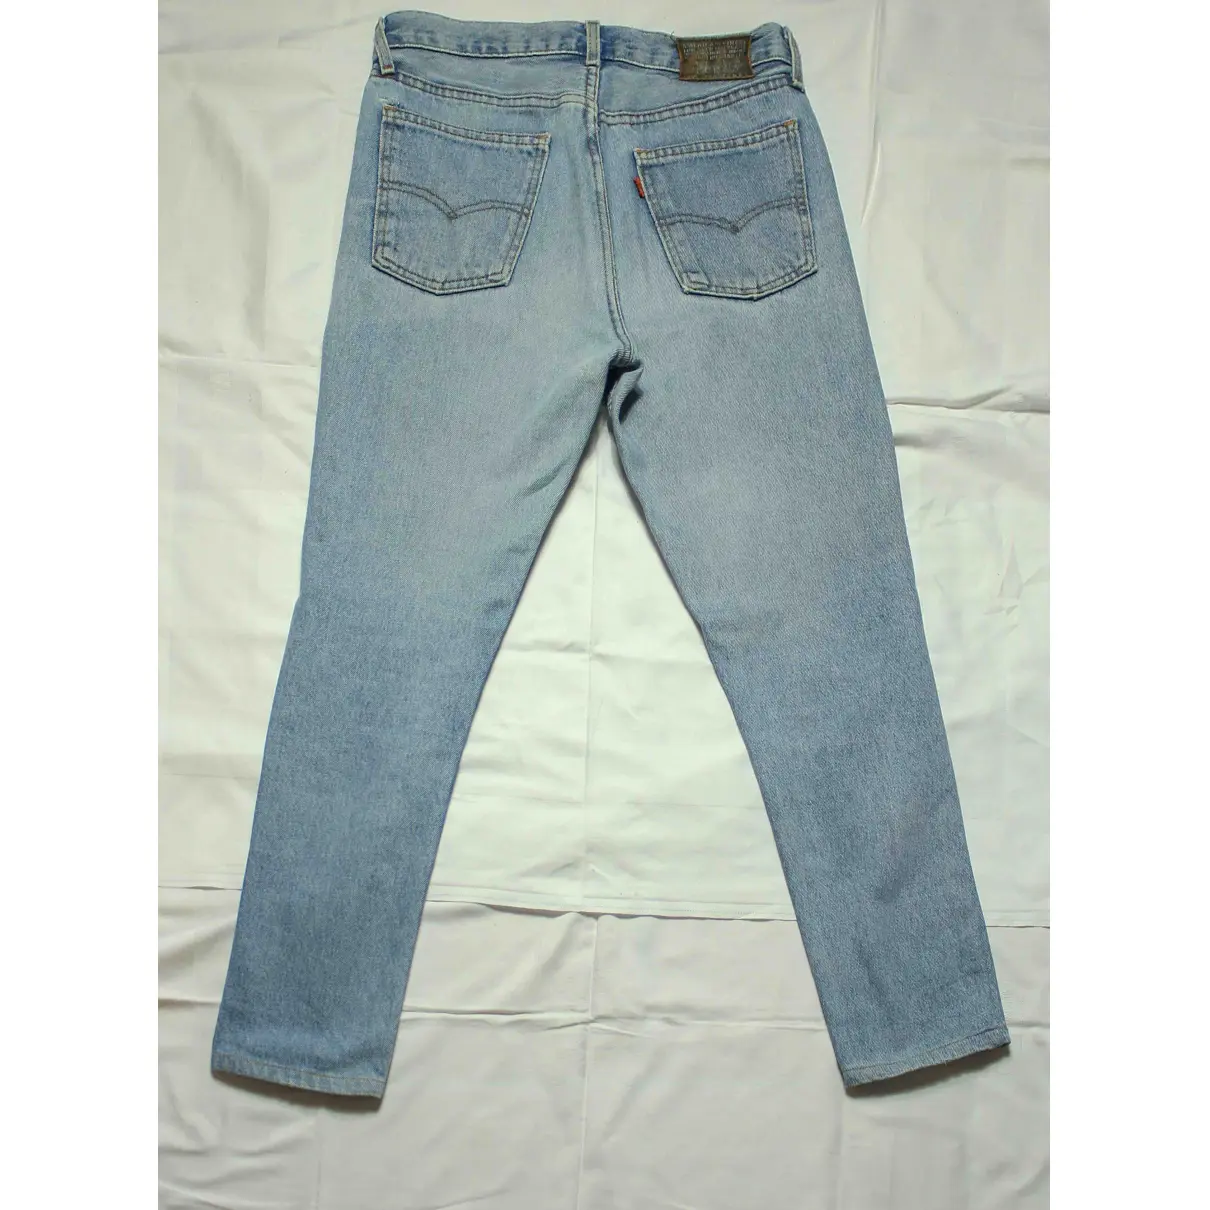 Buy Levi's Blue Cotton Jeans online